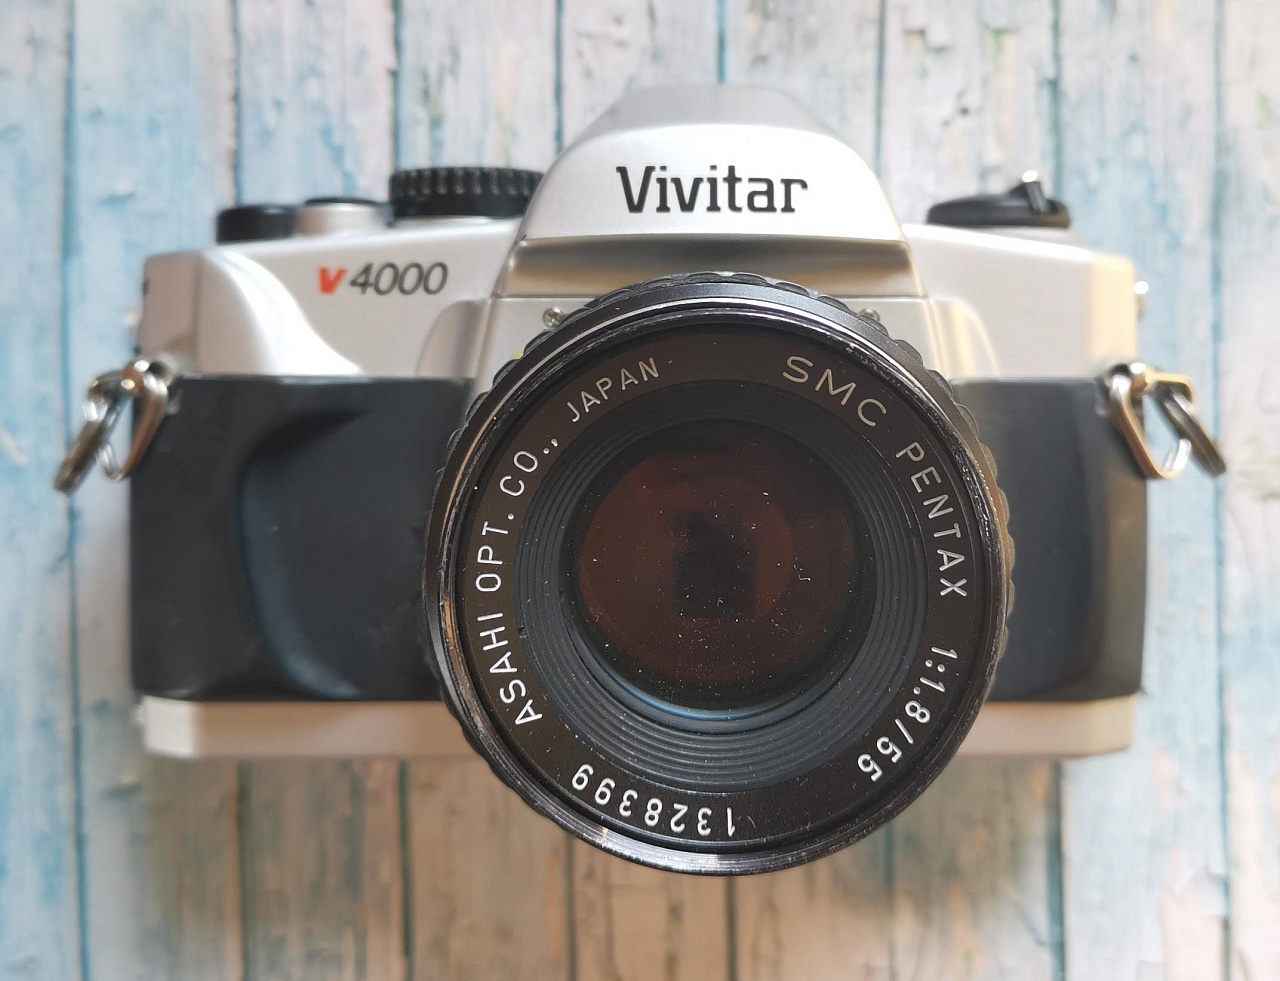 Vivitar v4000 + SMC Pentax 55 mm f/1.8 фото №1